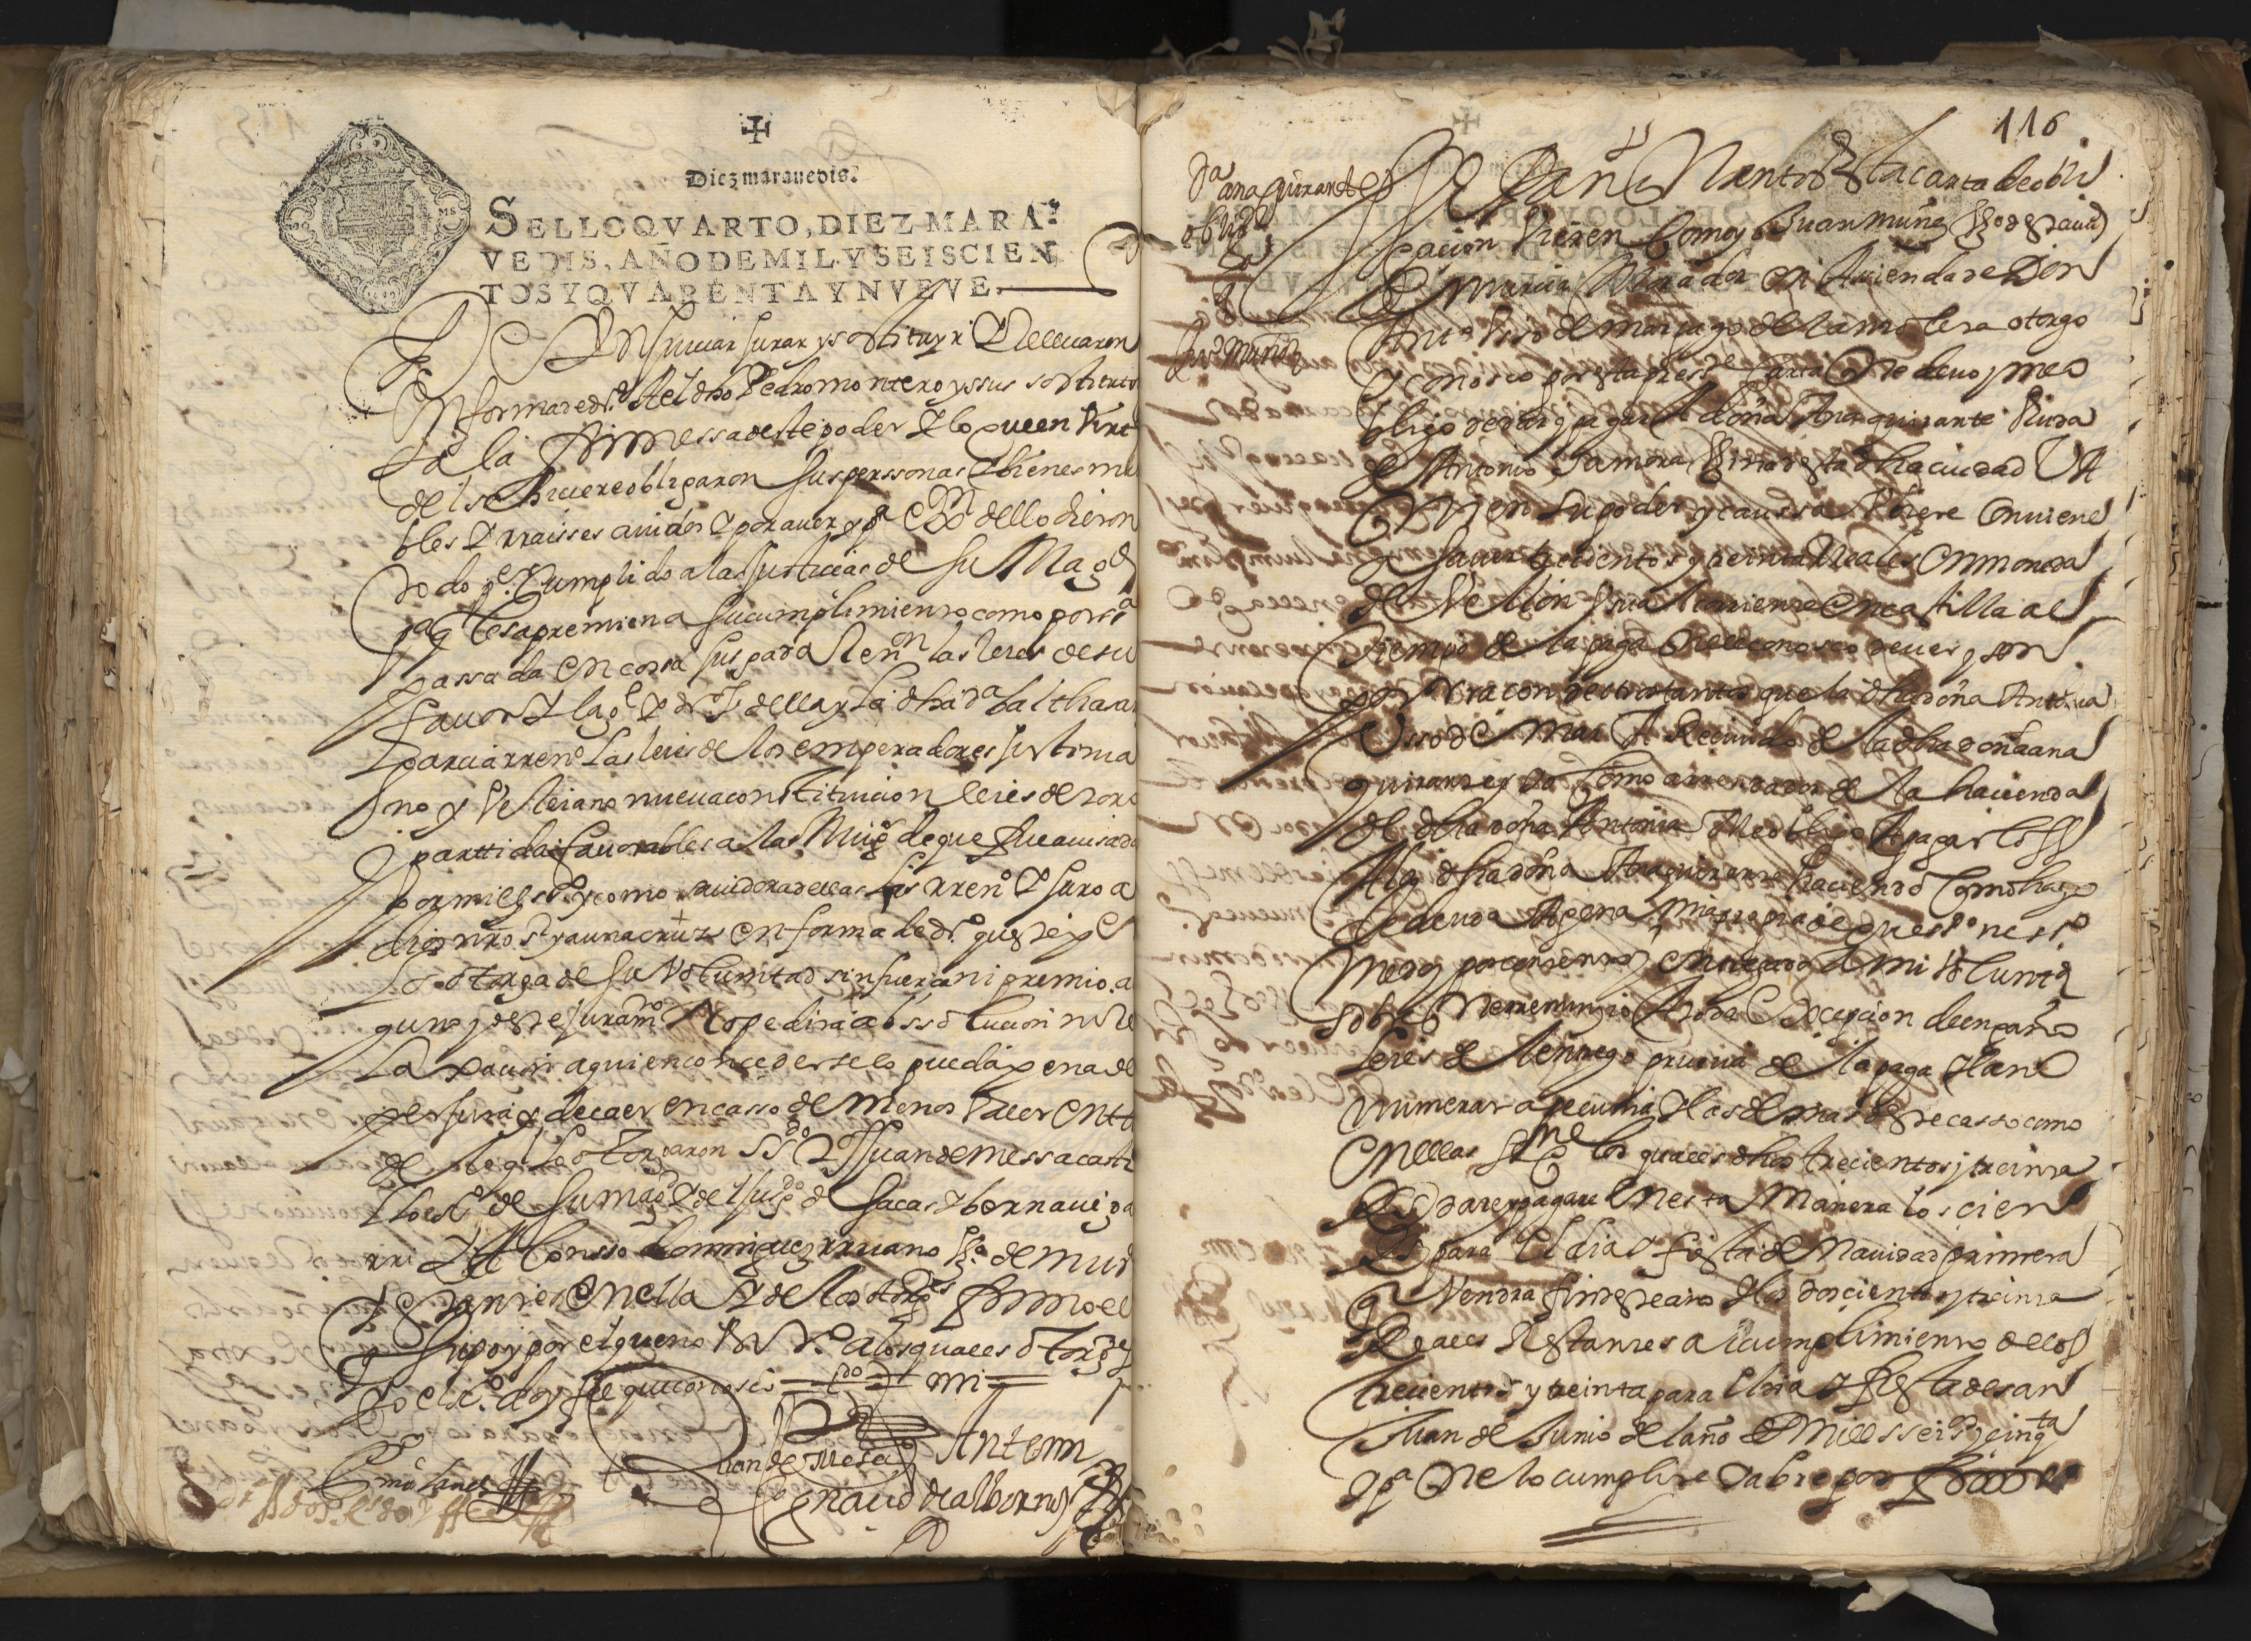 Registro de Ignacio de Albornoz y Velasco, Murcia de 1649.